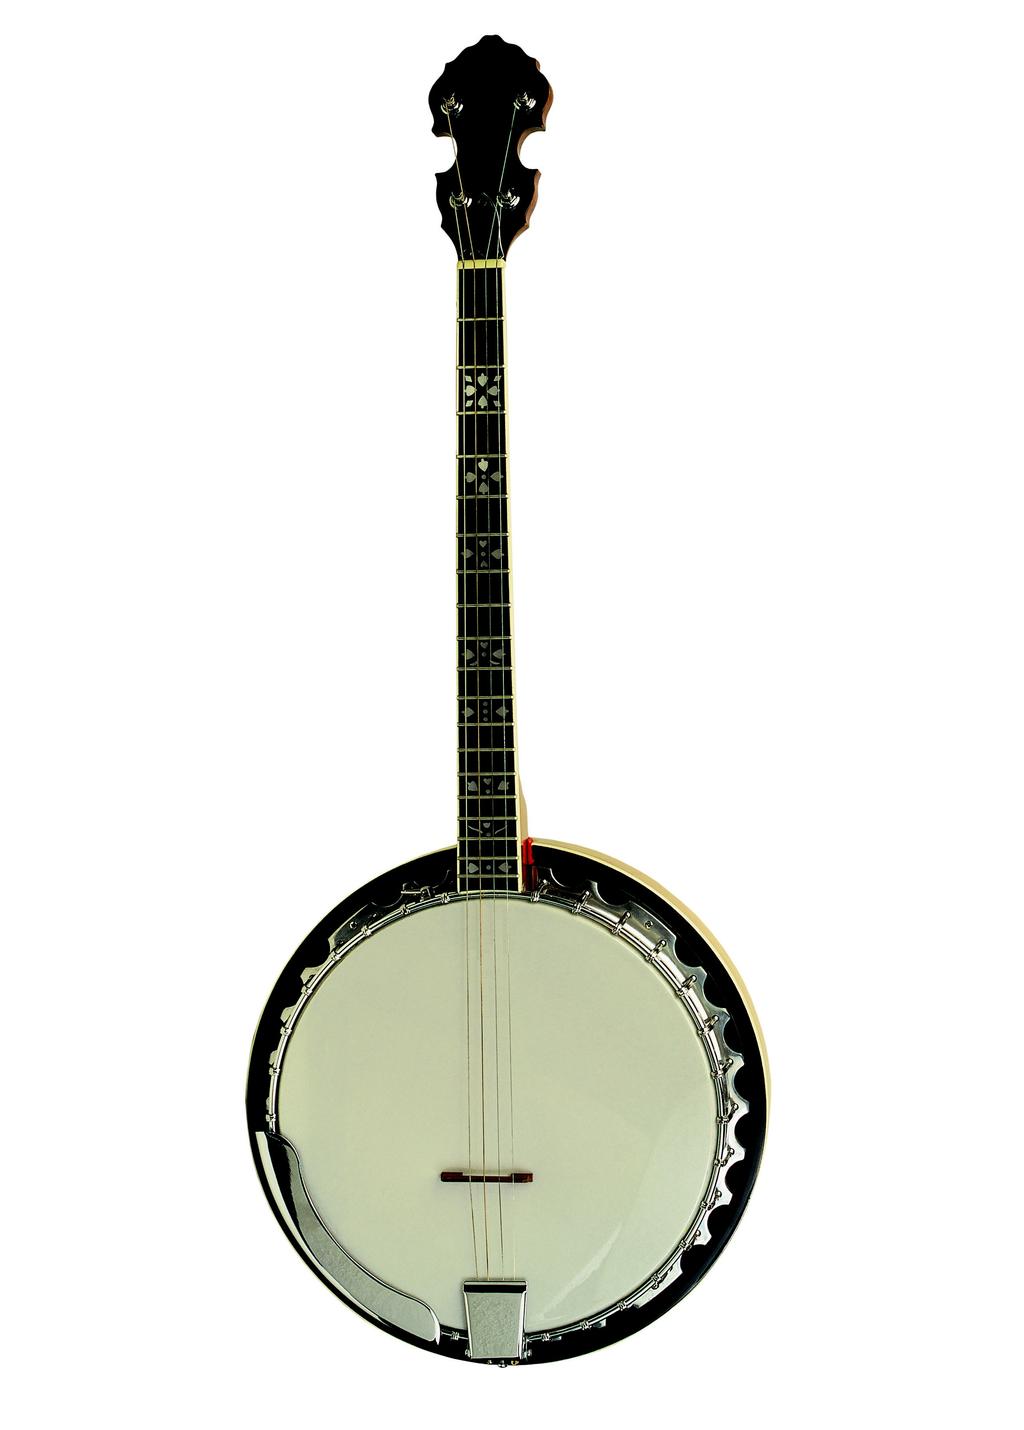 Cümbüş: Zeynel Abidin Cümbüş tarafından 20. yüzyıl başlarında geliştirilmiş olan ud benzeri bir müzik aletidir.